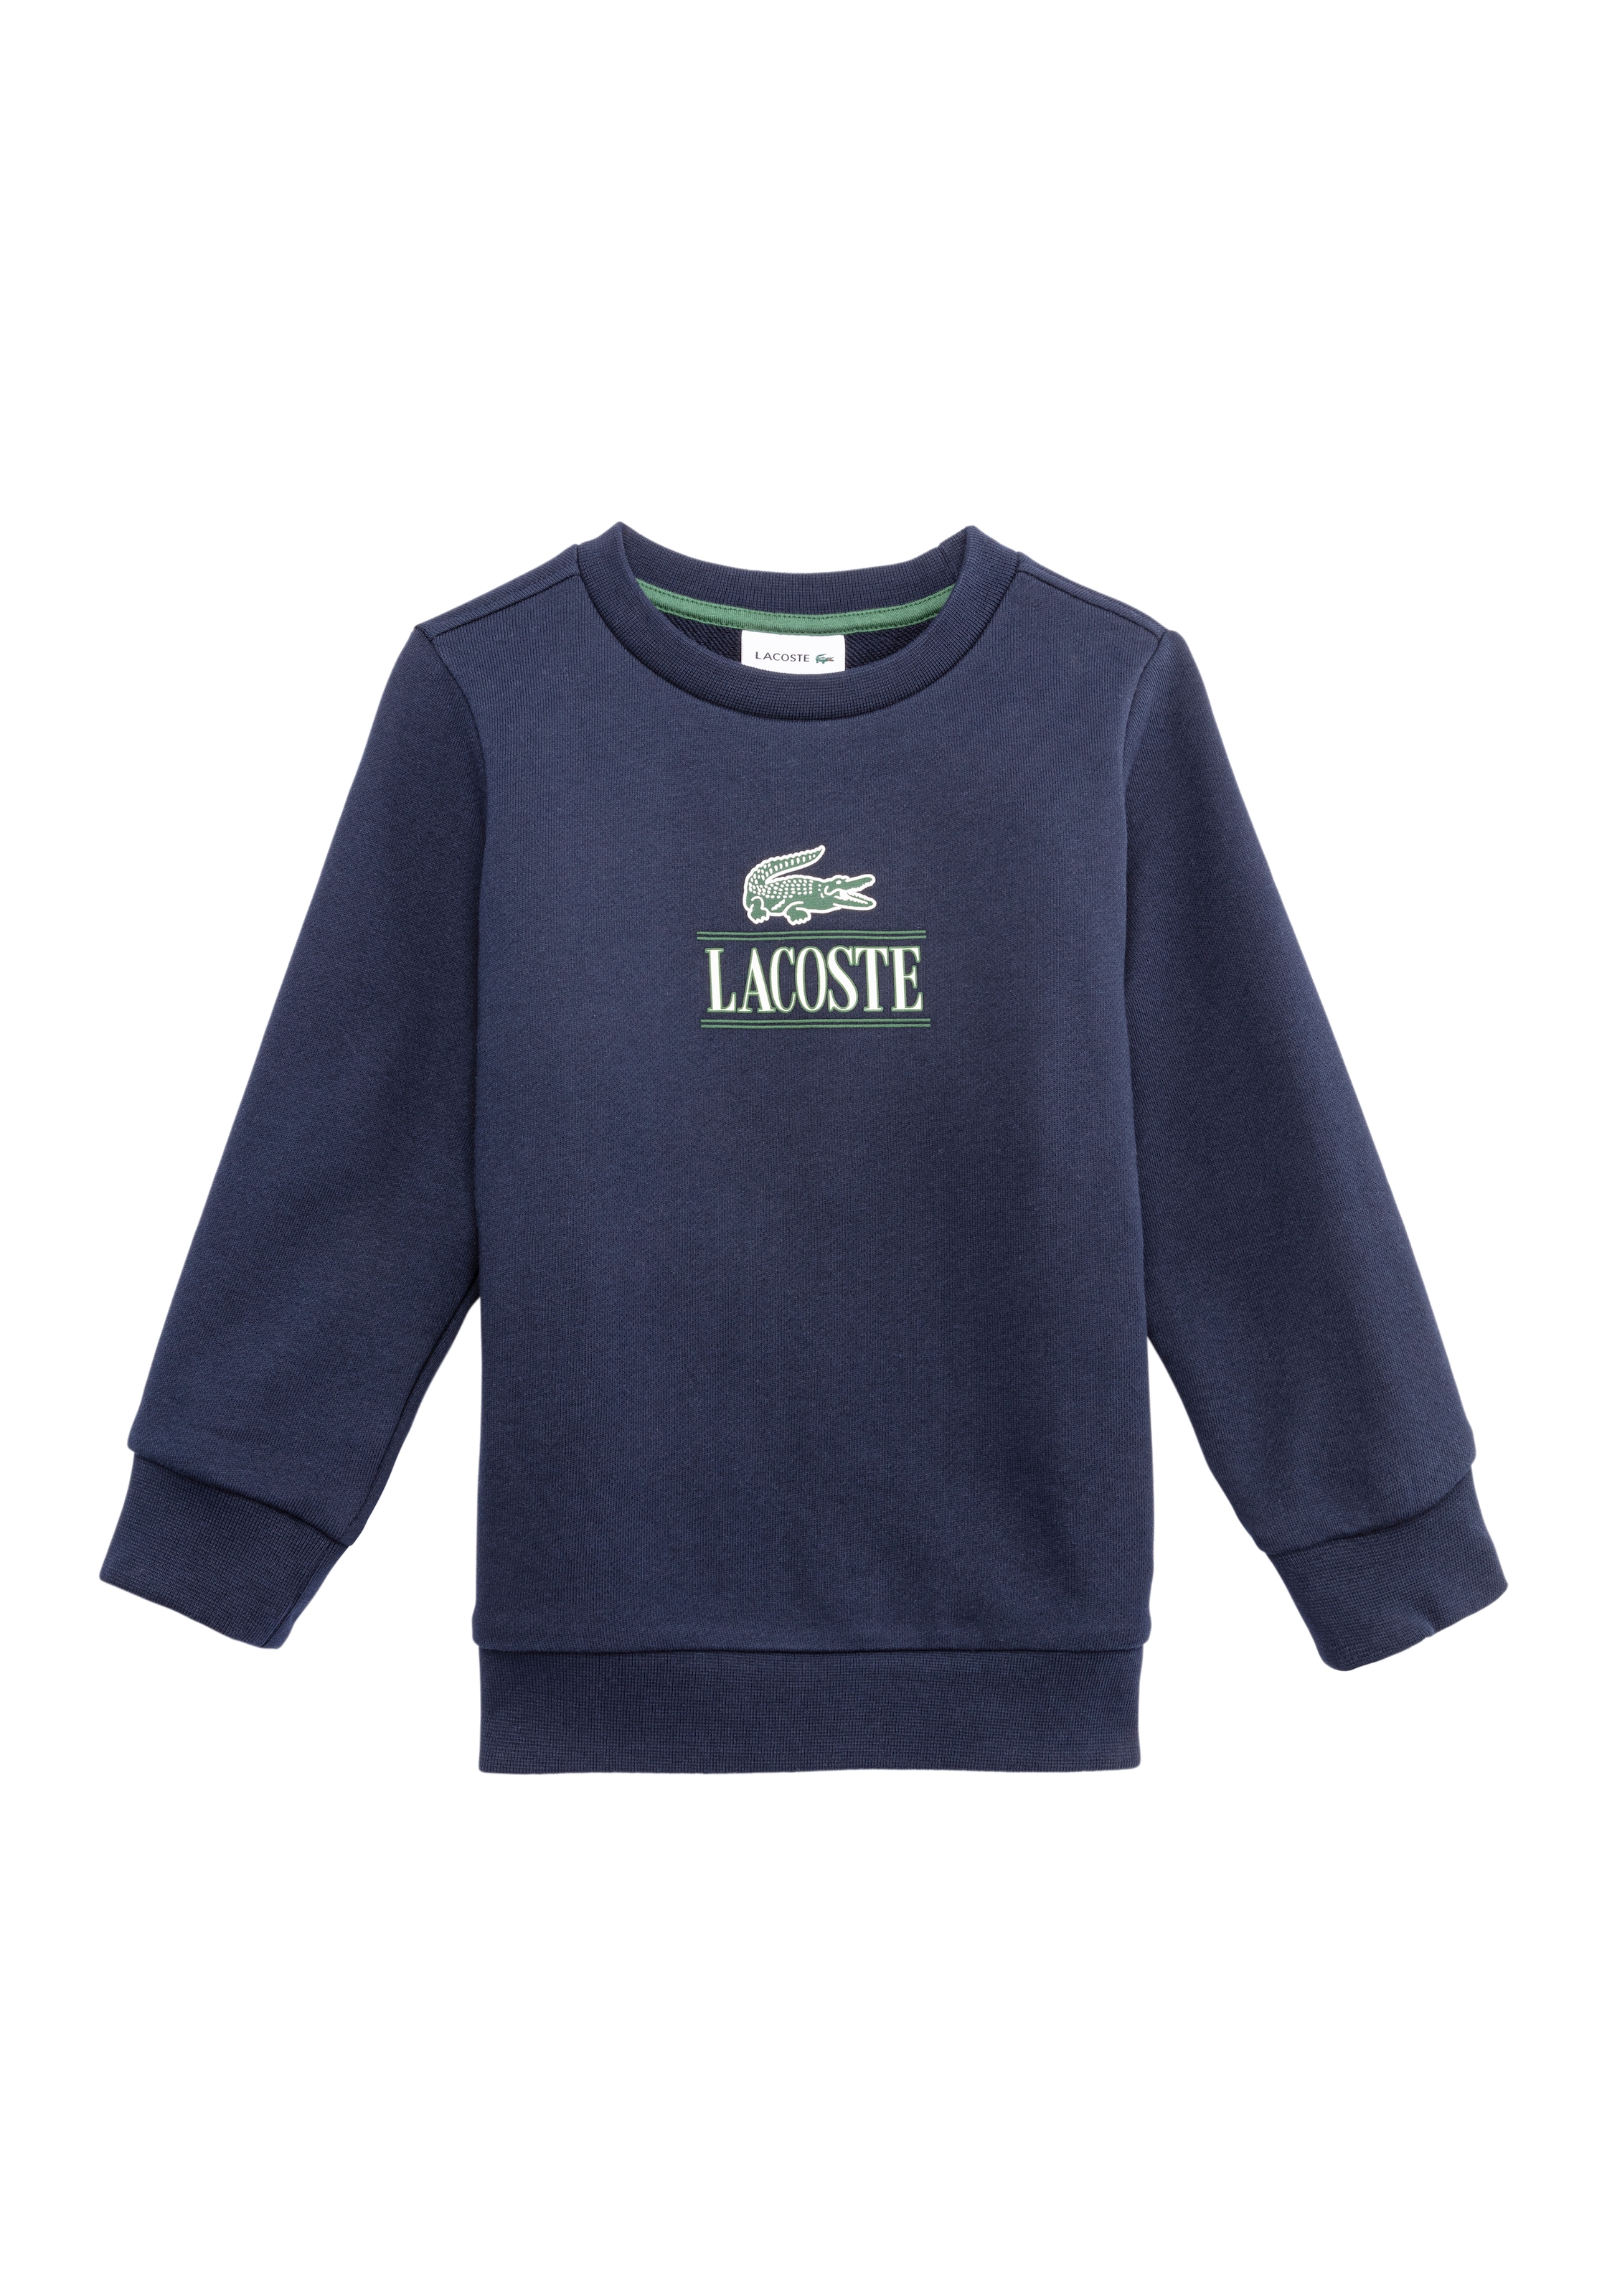 Lacoste Sweater, mit Lacoste Aufdruck